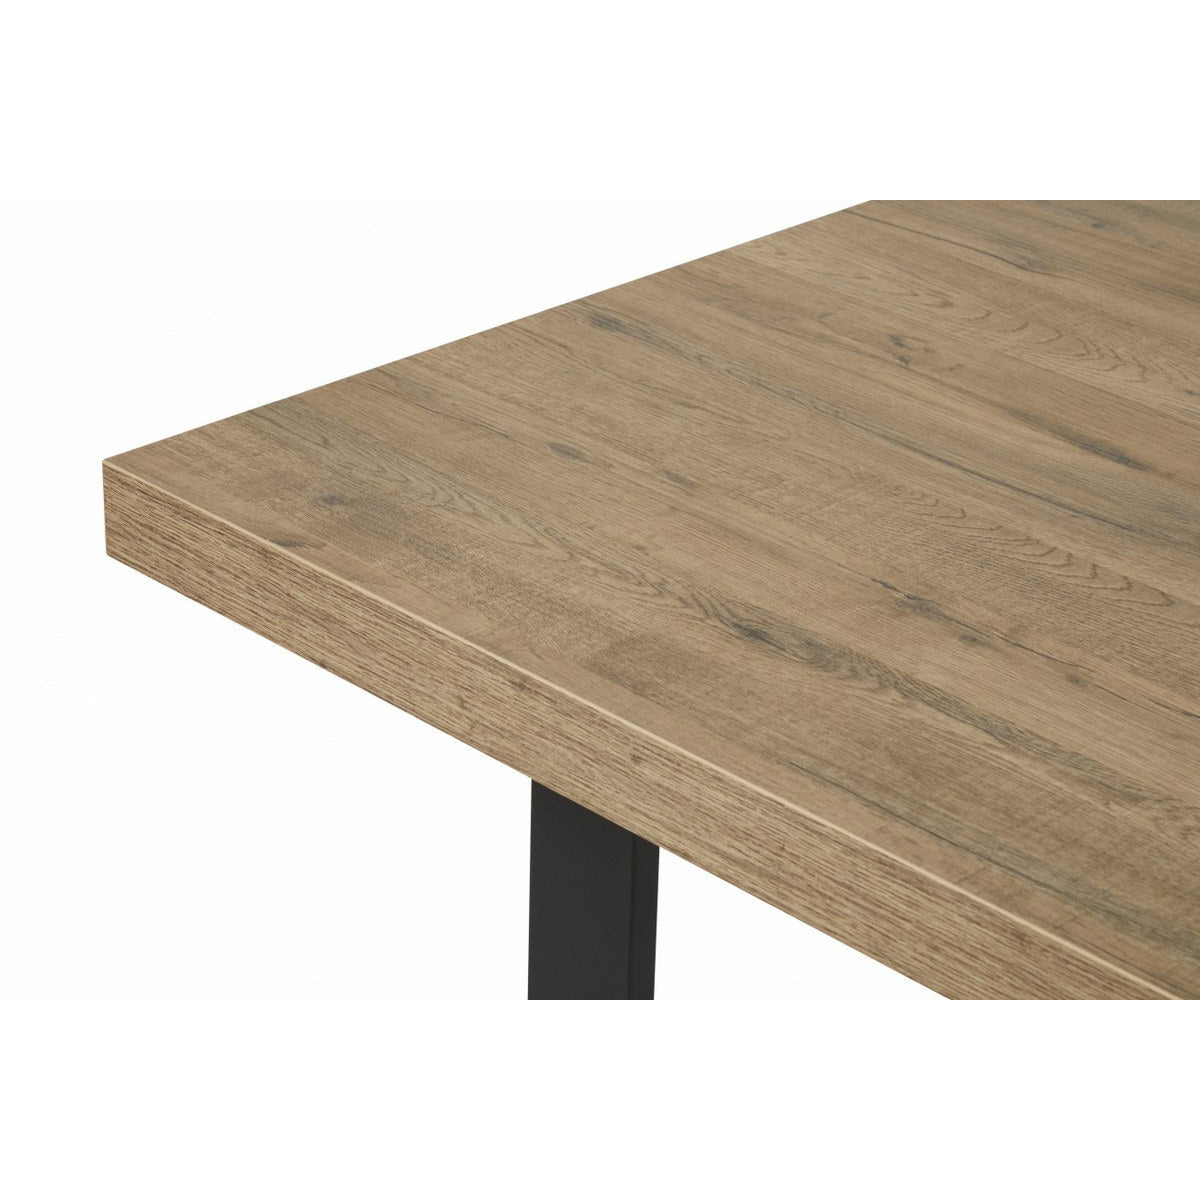 Table | Furniture series Manor | brown, natural, black